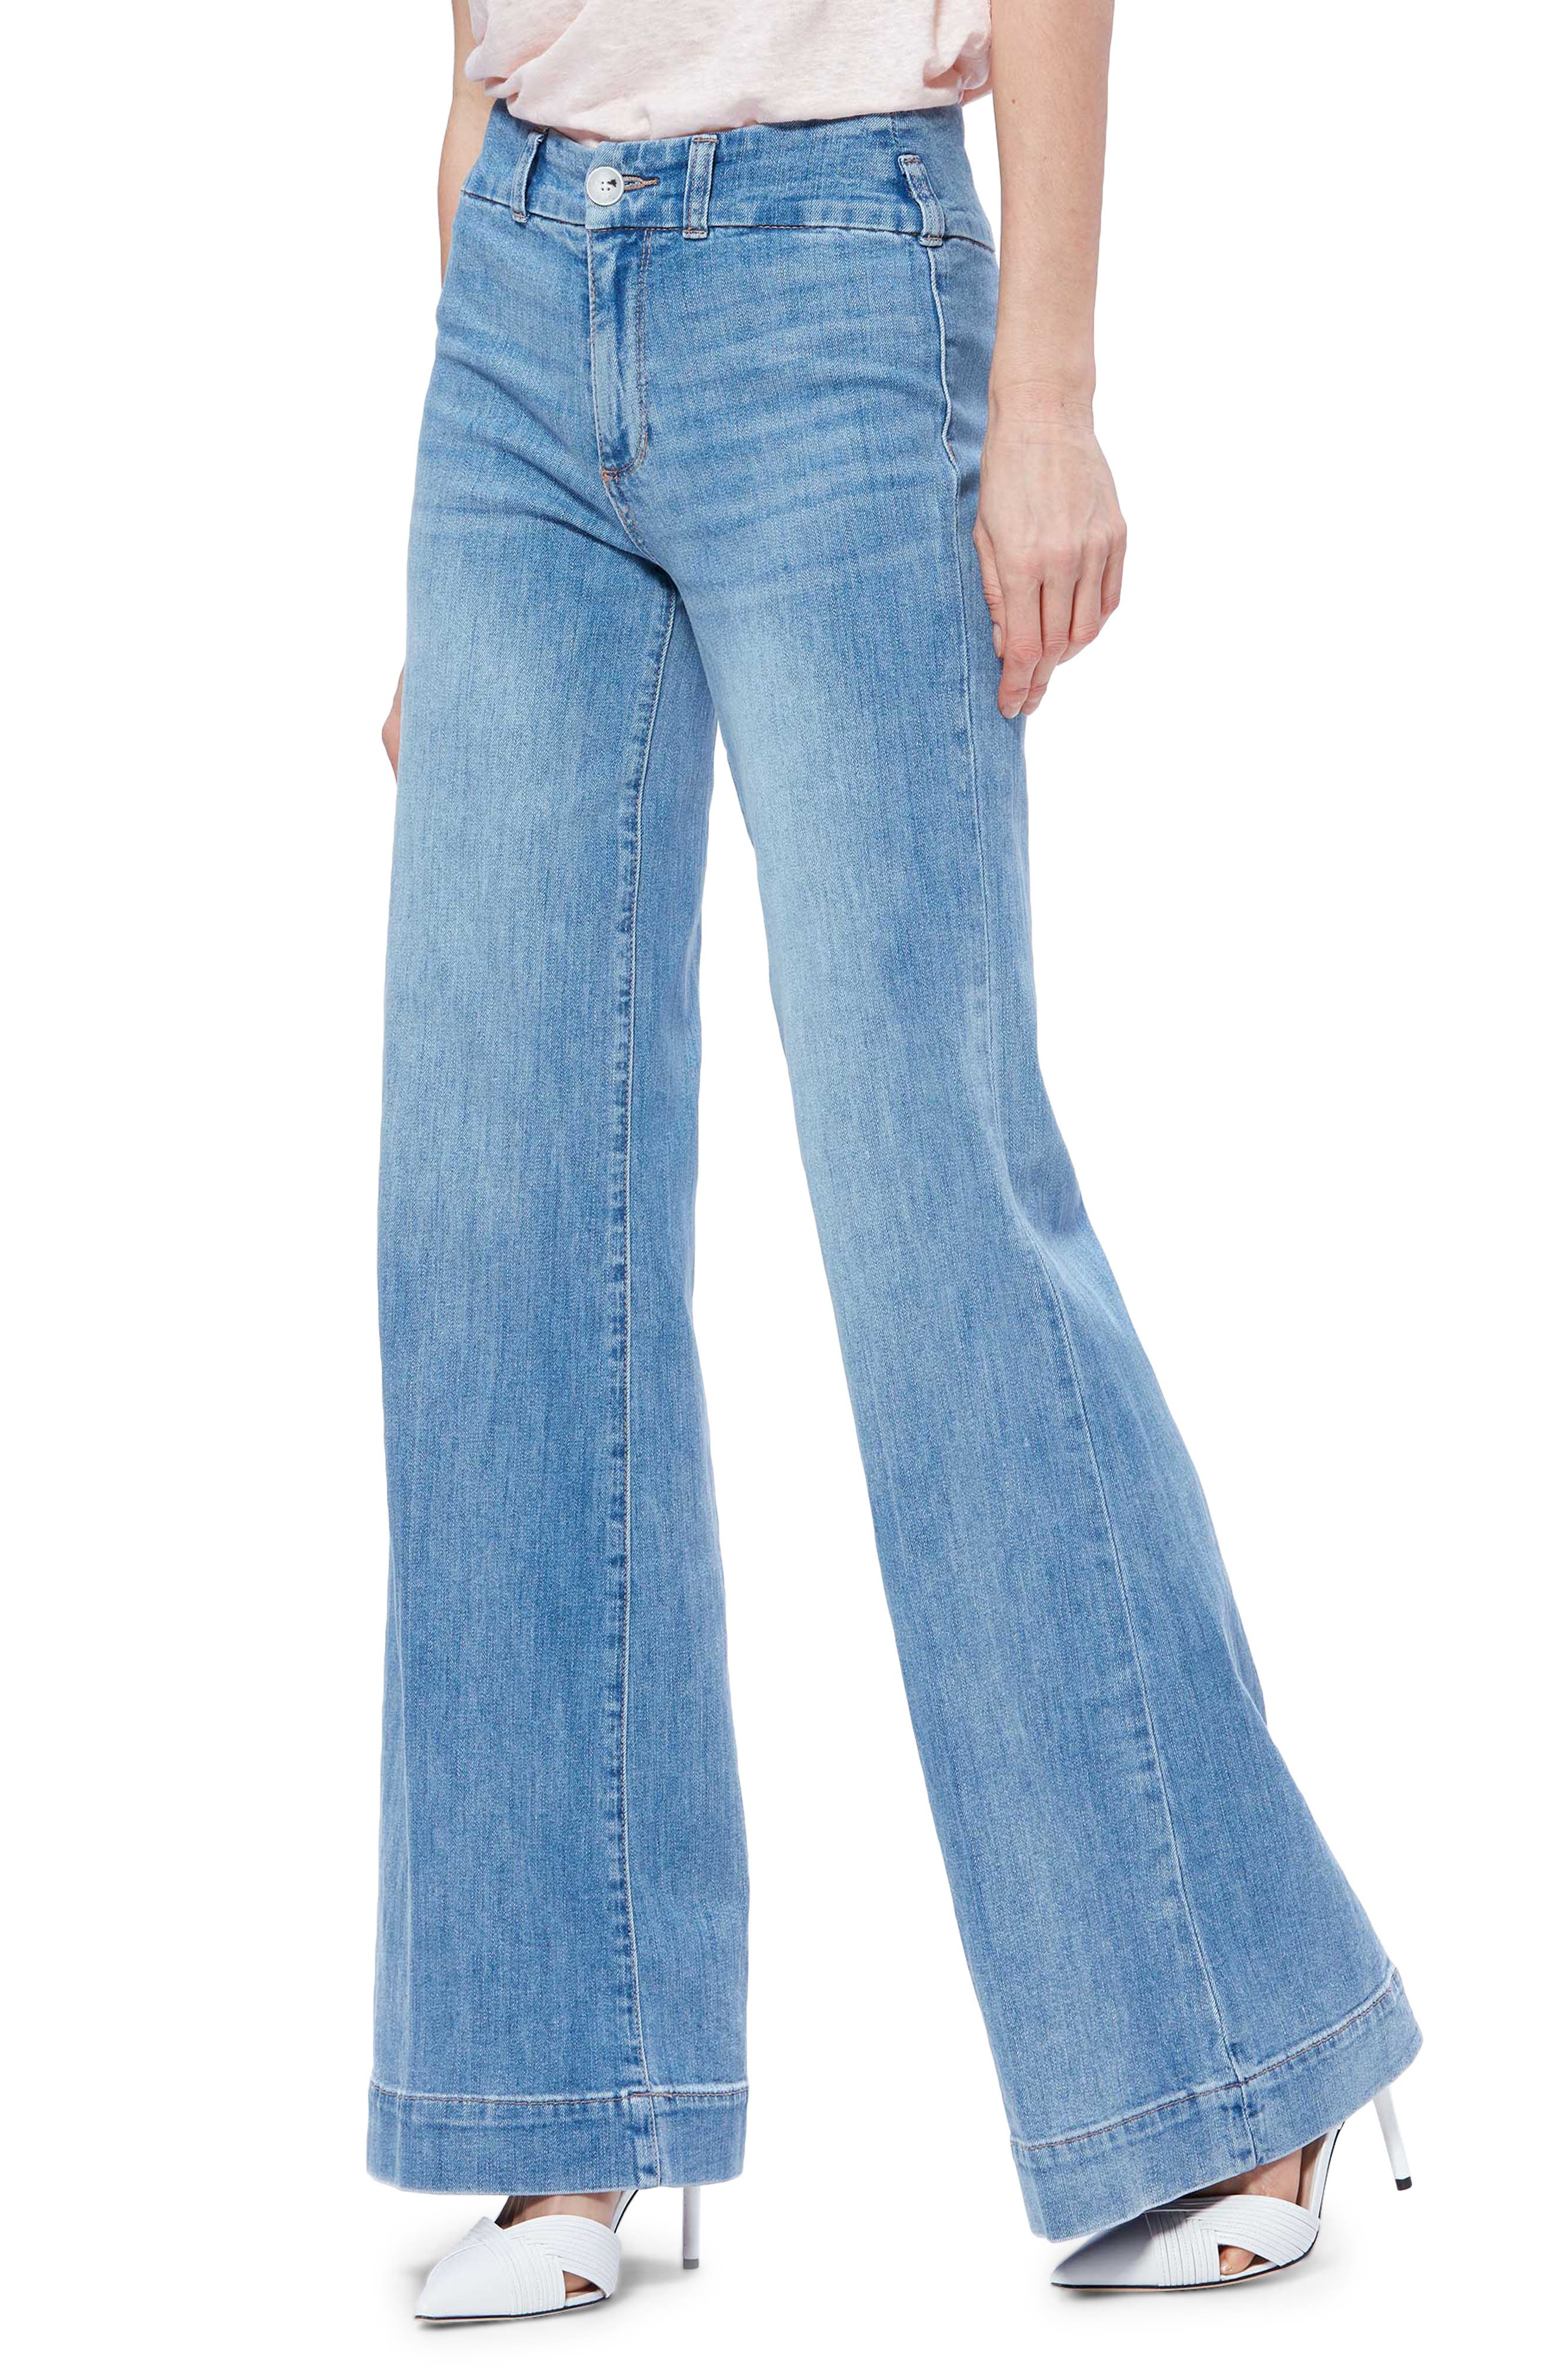 paige wide leg jeans